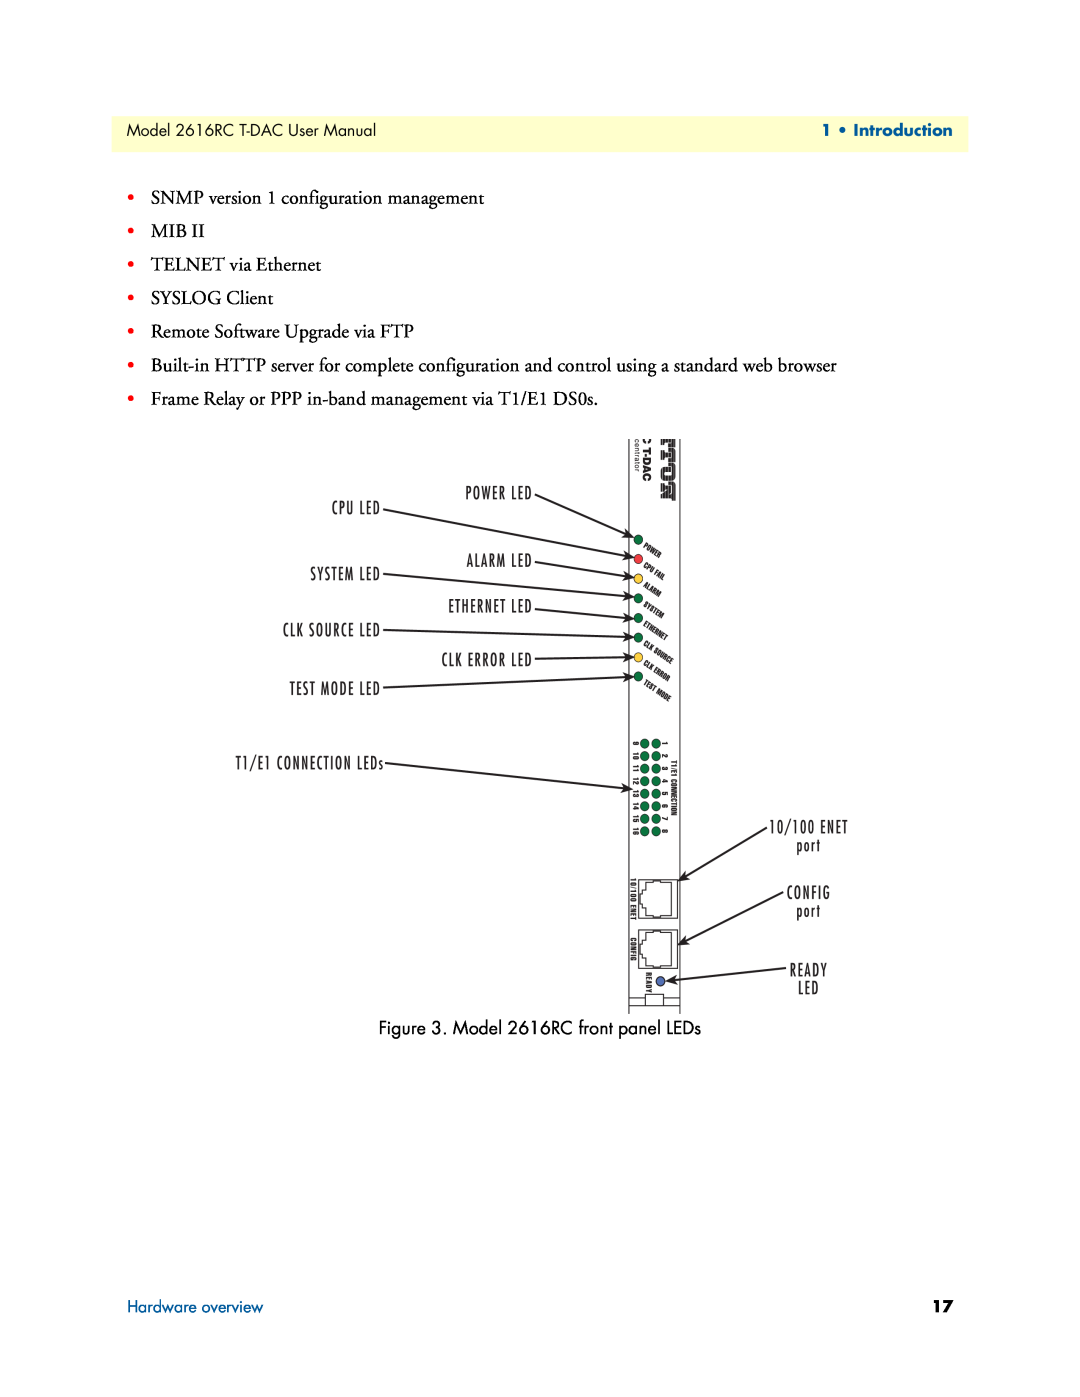 Patton electronic SNMP version 1 configuration management MIB TELNET via Ethernet, Model 2616RC front panel LEDs 